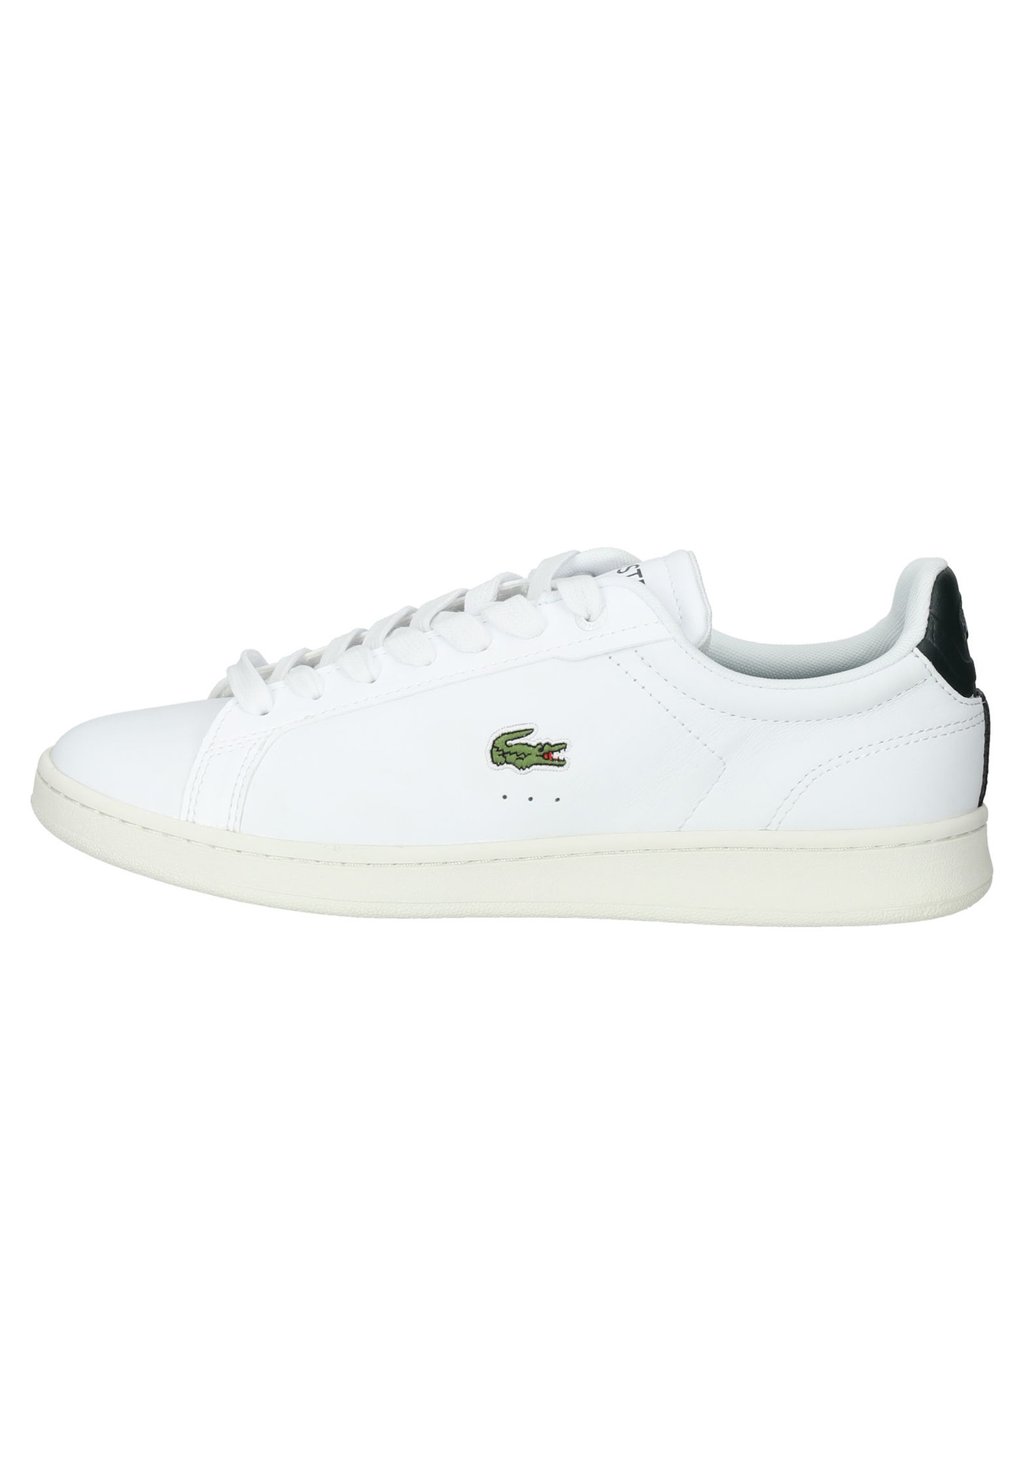 Кроссовки Lacoste Carnaby Pro 123 9 Sma, белый / темно-зеленый кроссовки lacoste zapatillas wht grn